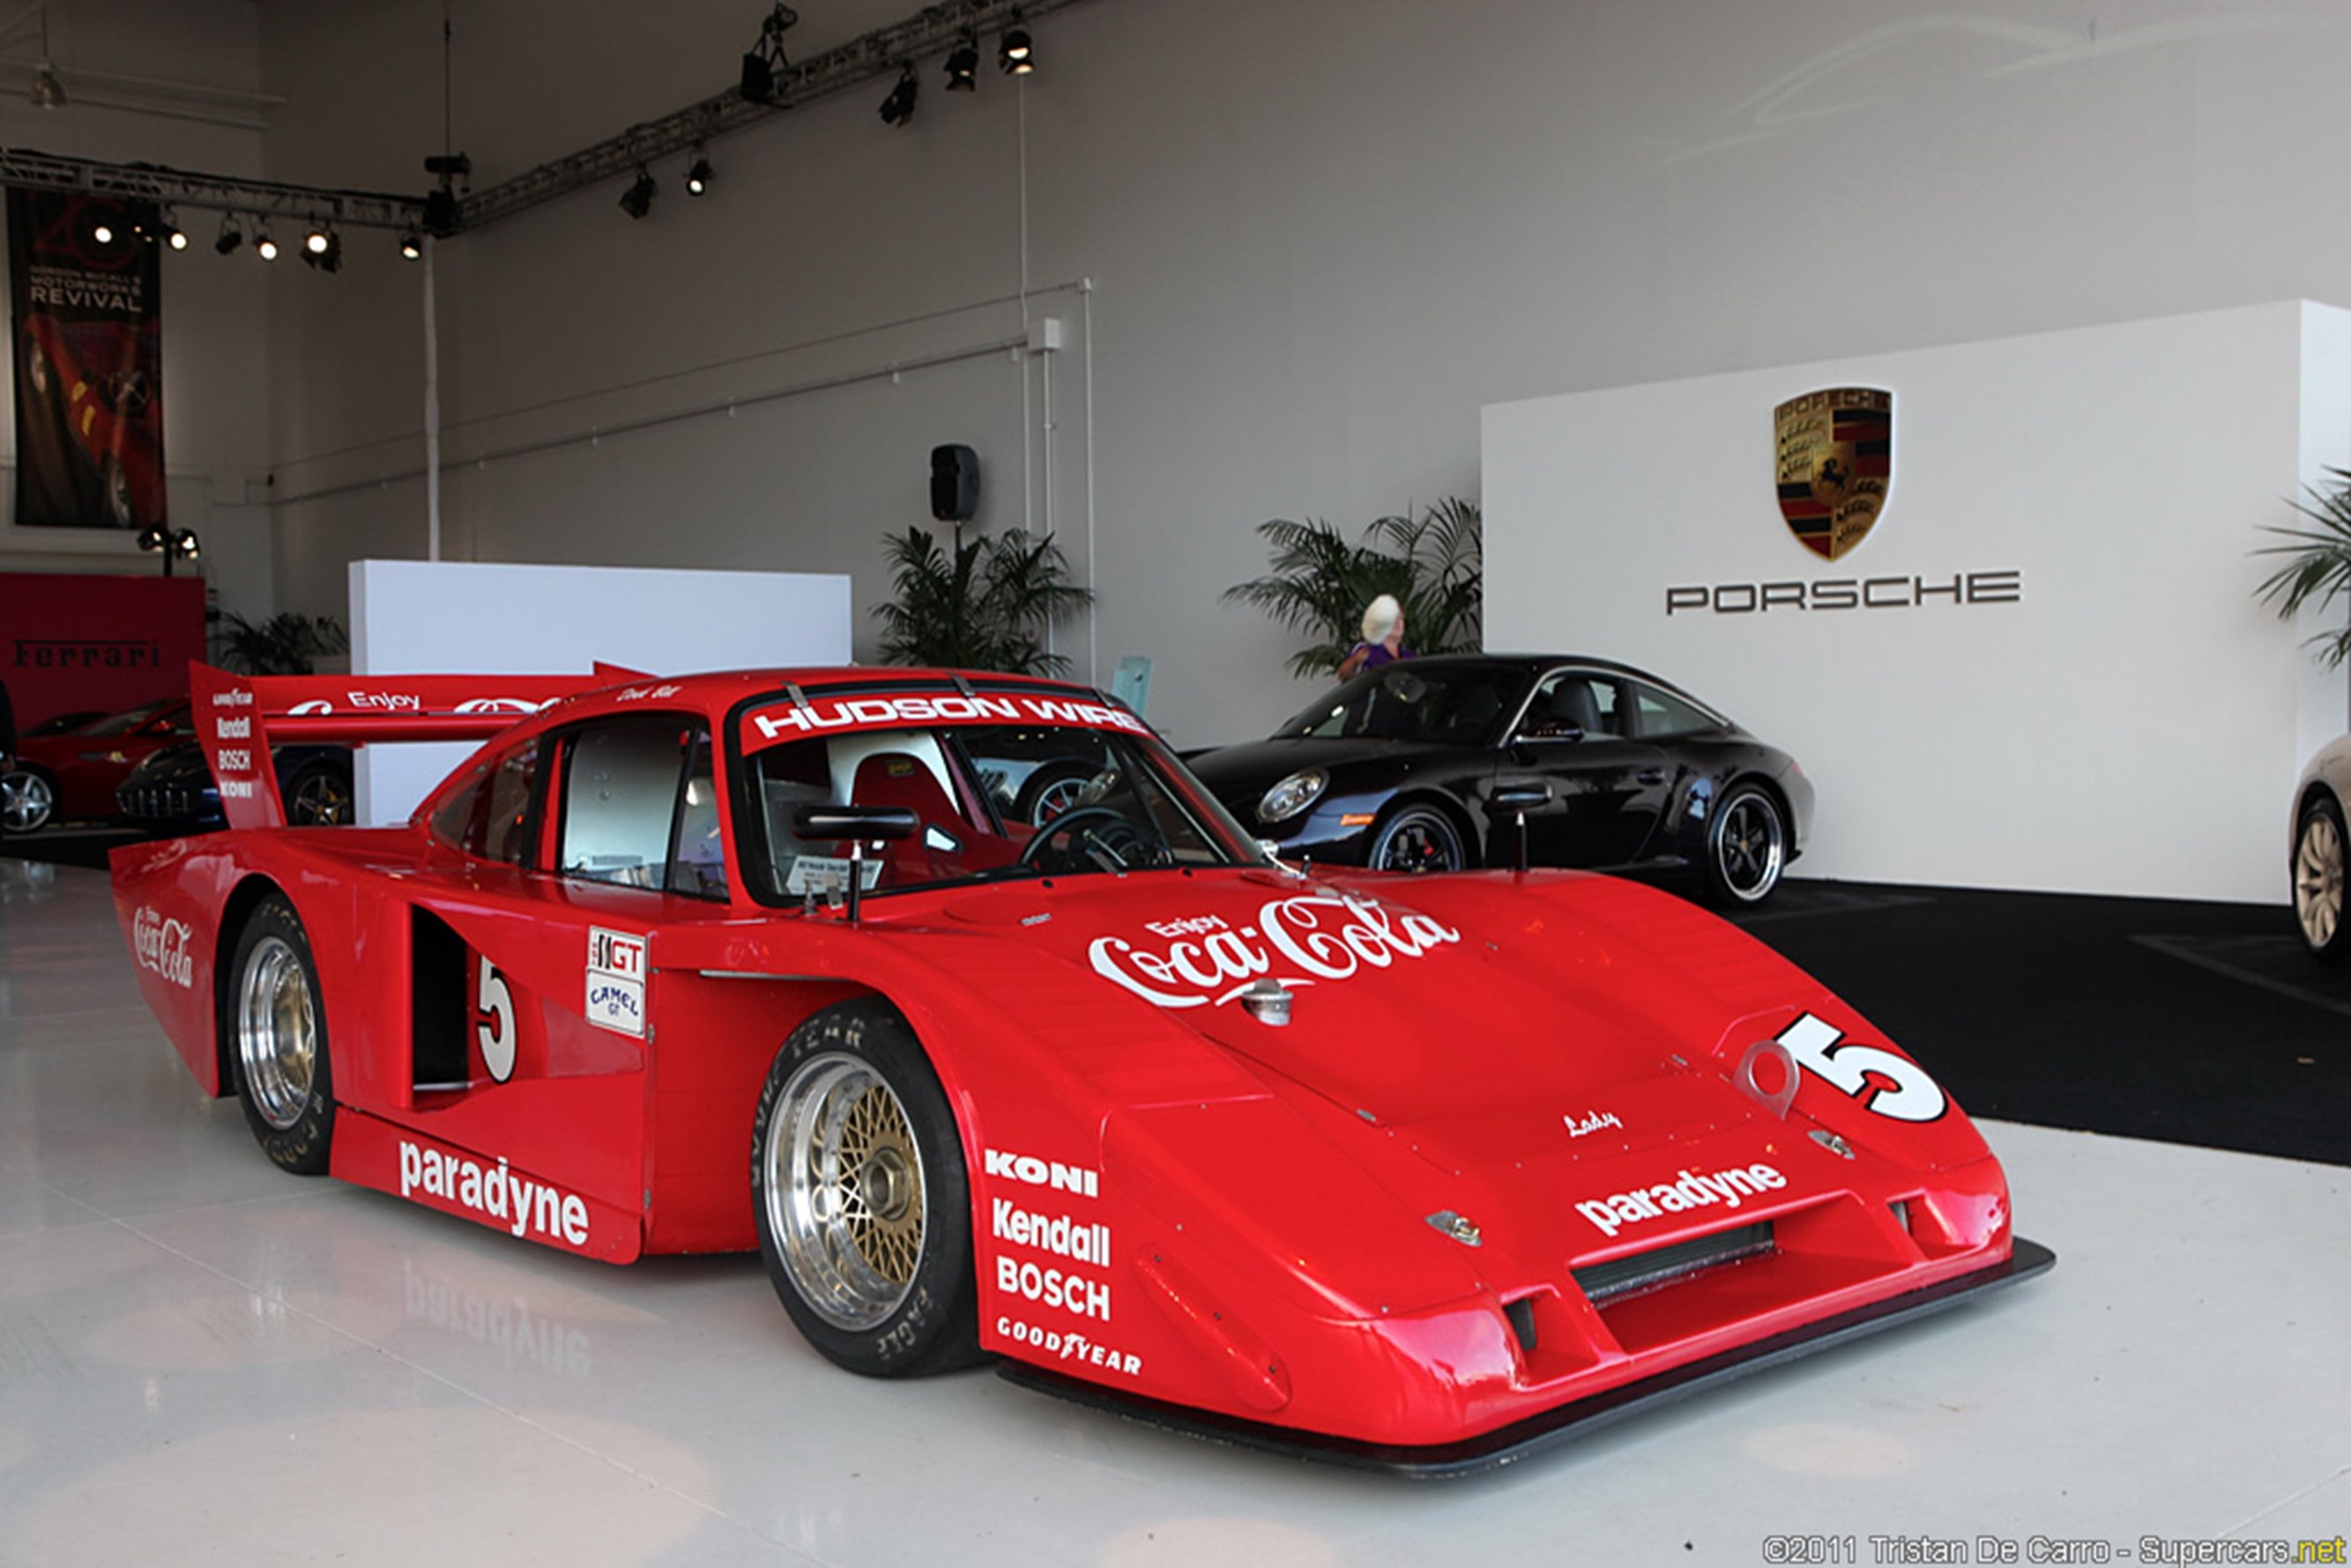 race, Car, Classic, Racing, 2667x1779, Porsche, Coca cola Wallpaper